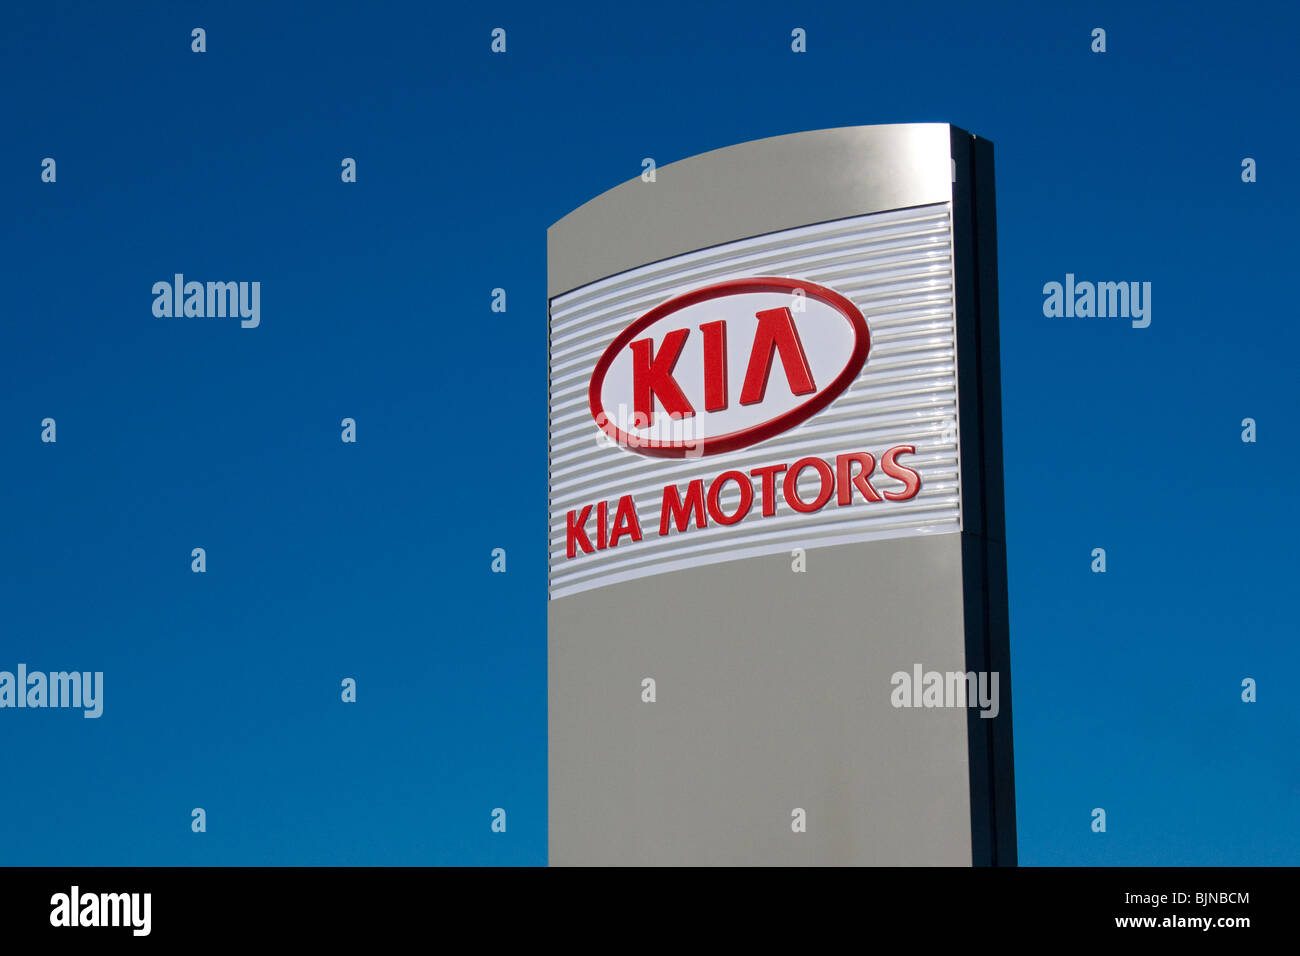 Kia motors motor logo company dealership blue sky Stock Photo